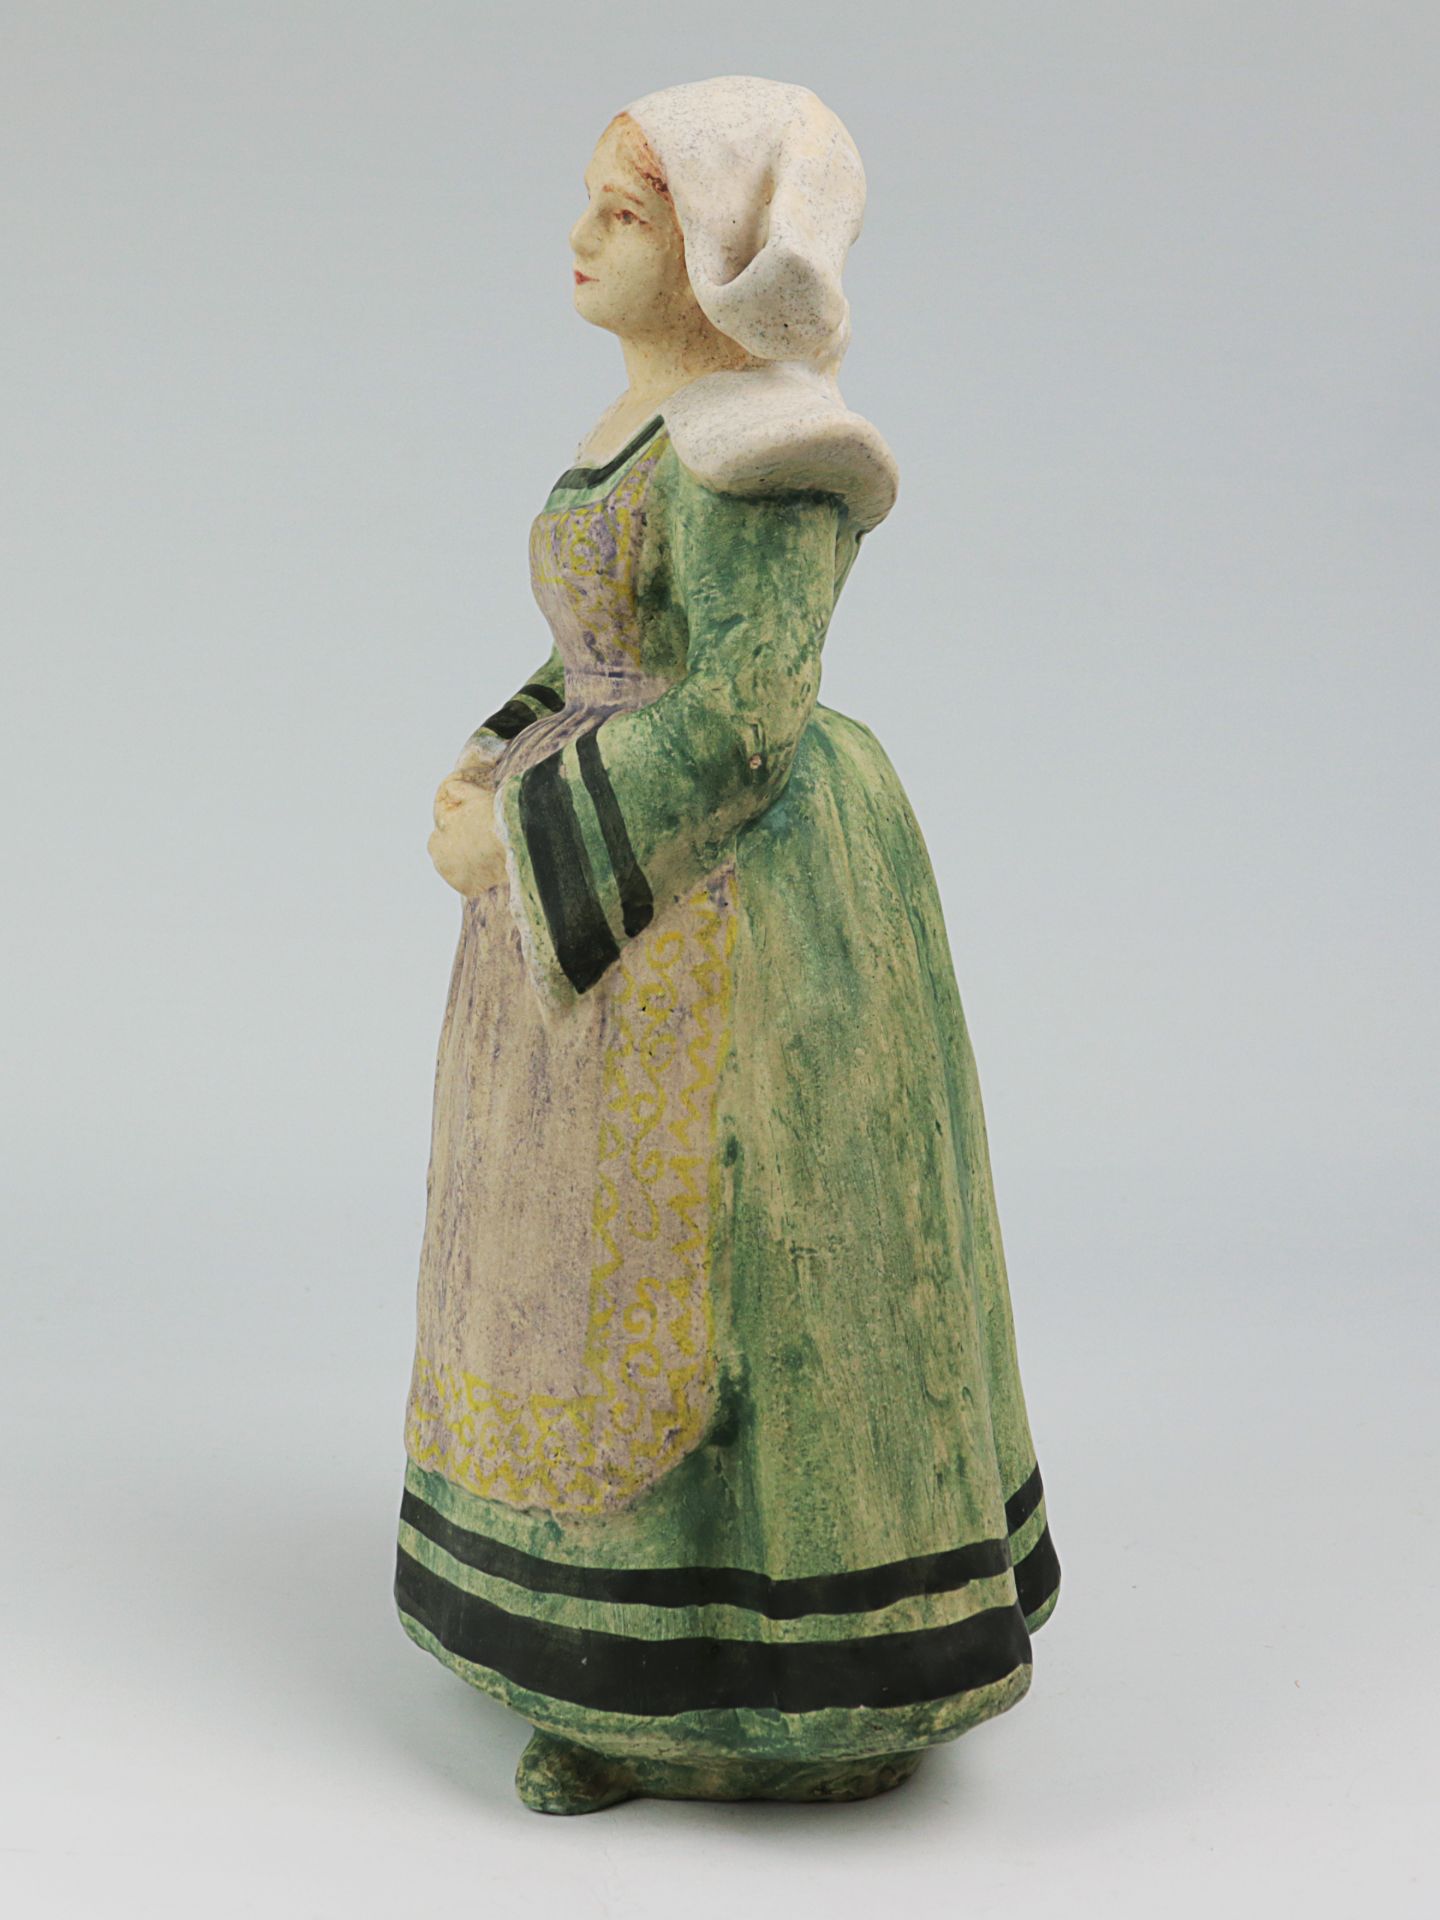 Lachenal, Edmond - Figur um 1900, Jugendstil, Frankreich, Châtillon-sous-Bagneux, Keramik, heller - Bild 3 aus 4